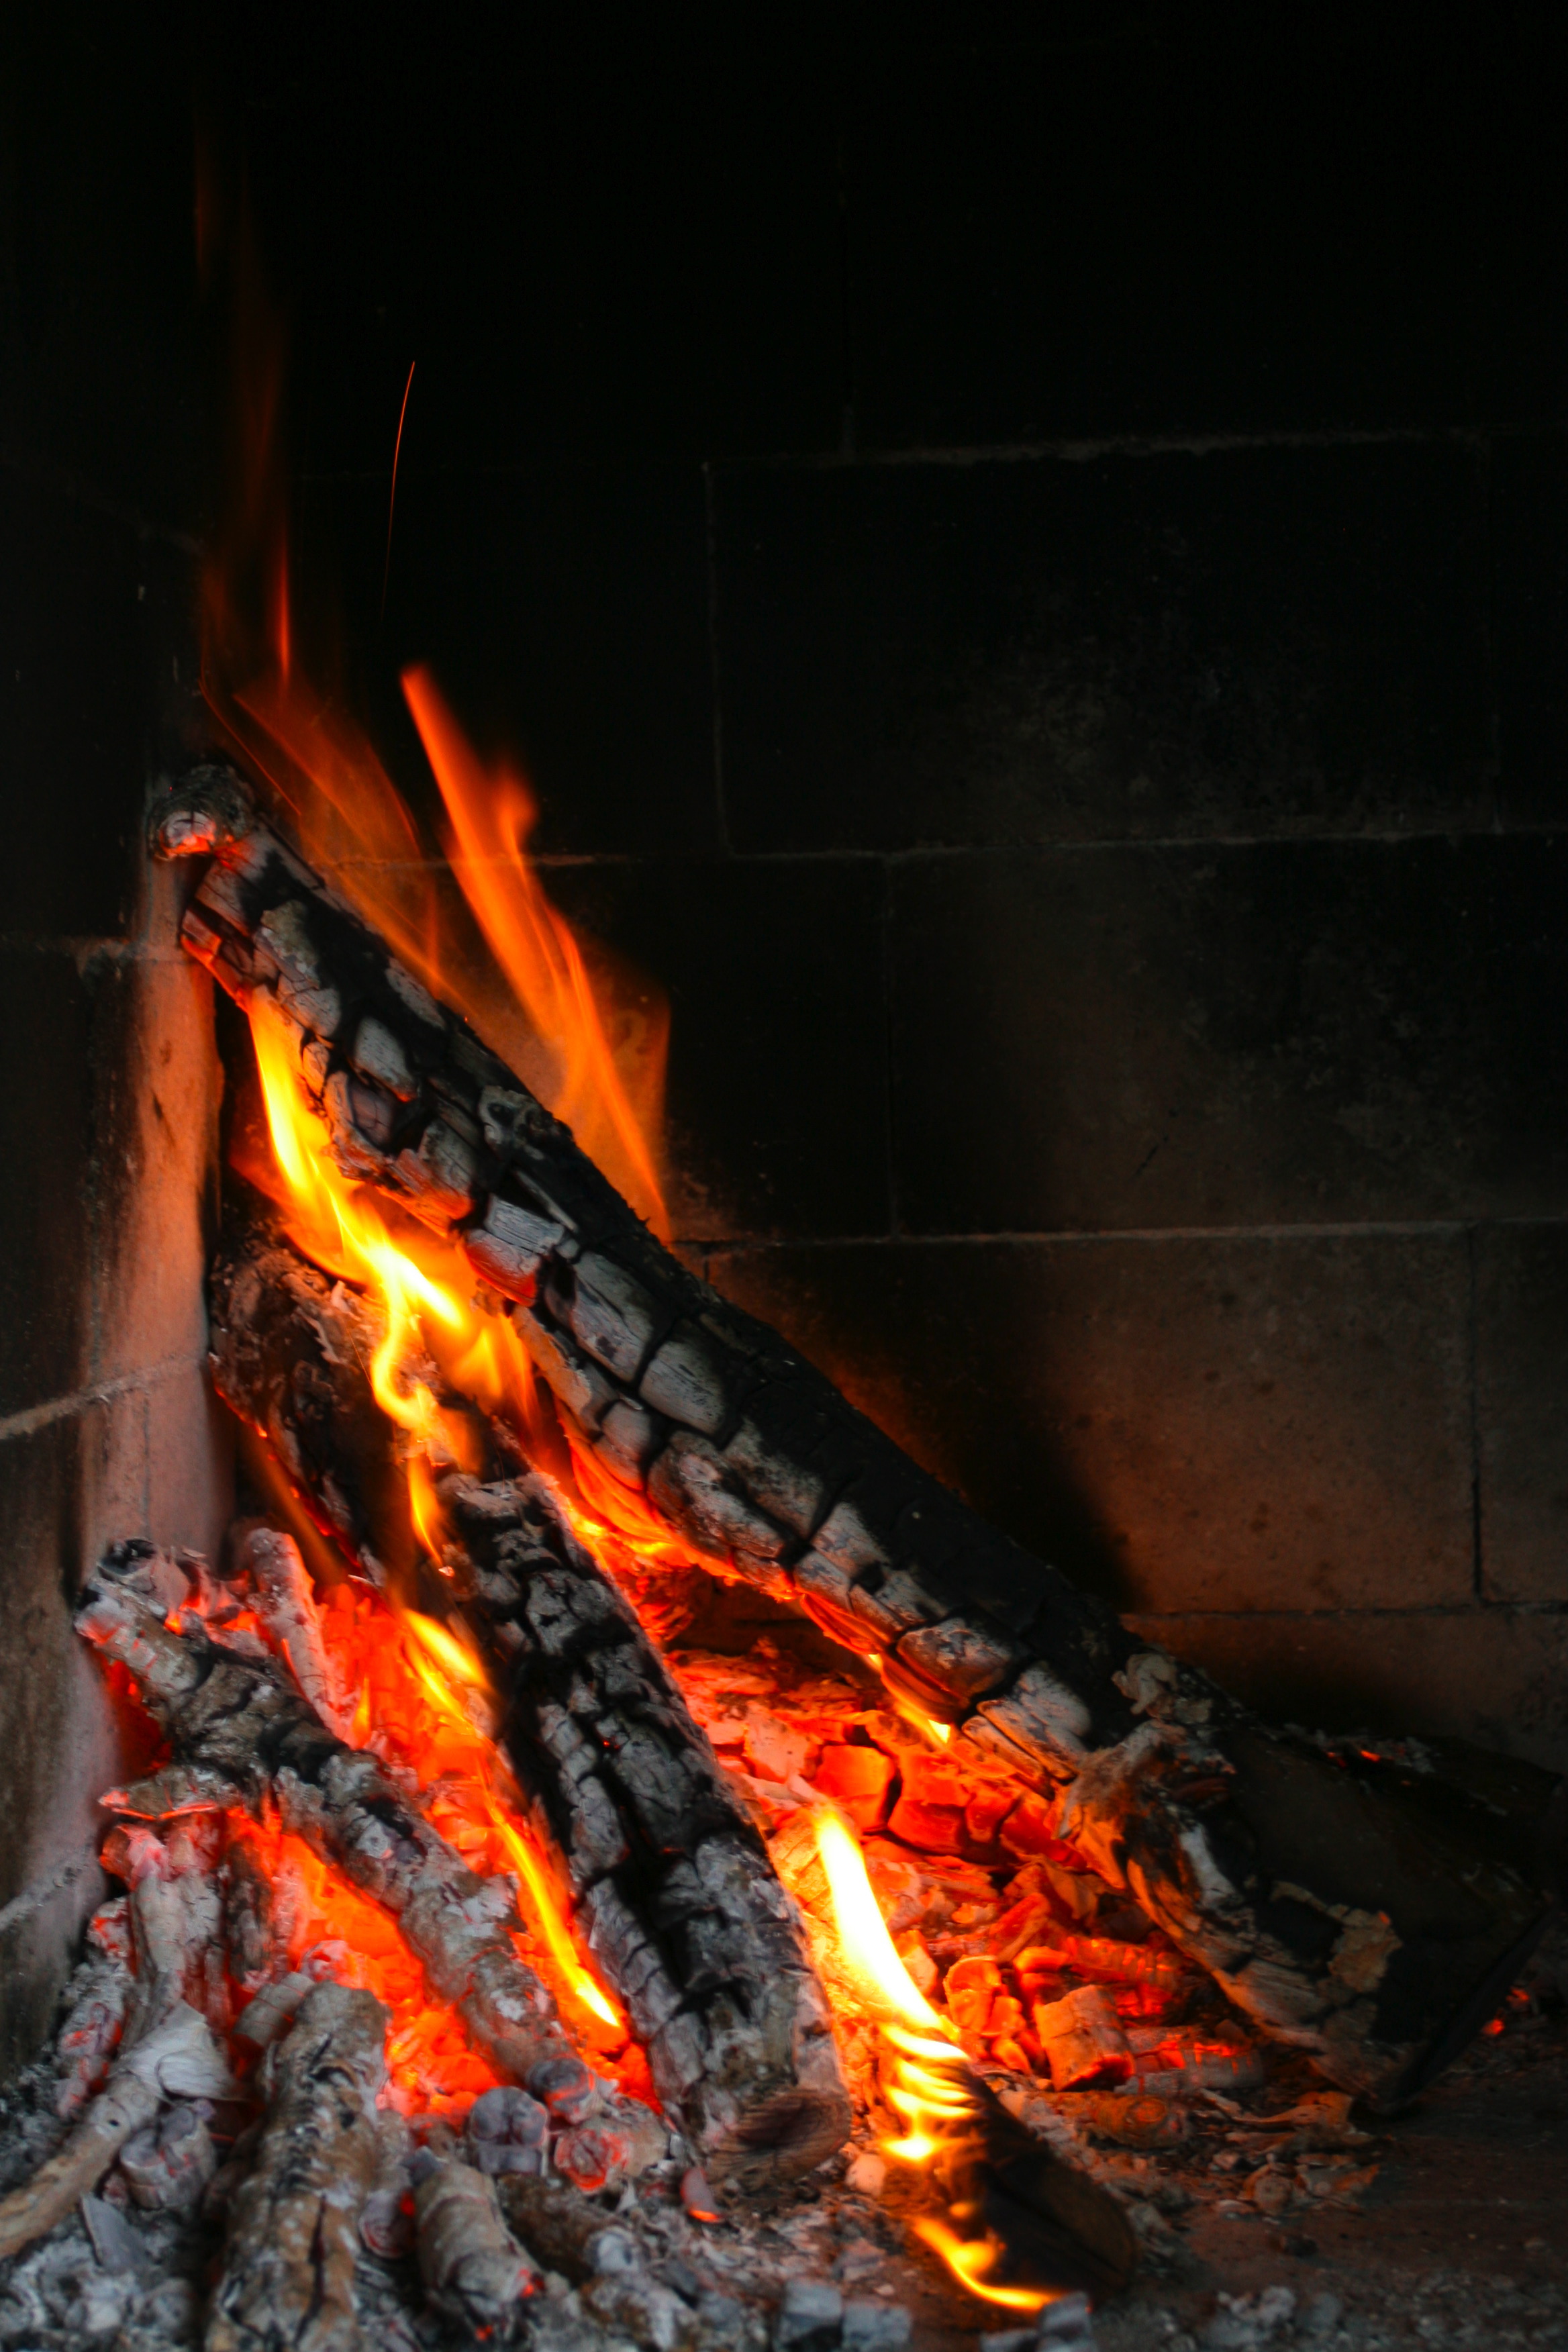 Burning Tree, Ashes, Bspo06, Burning, Fireplace, HQ Photo